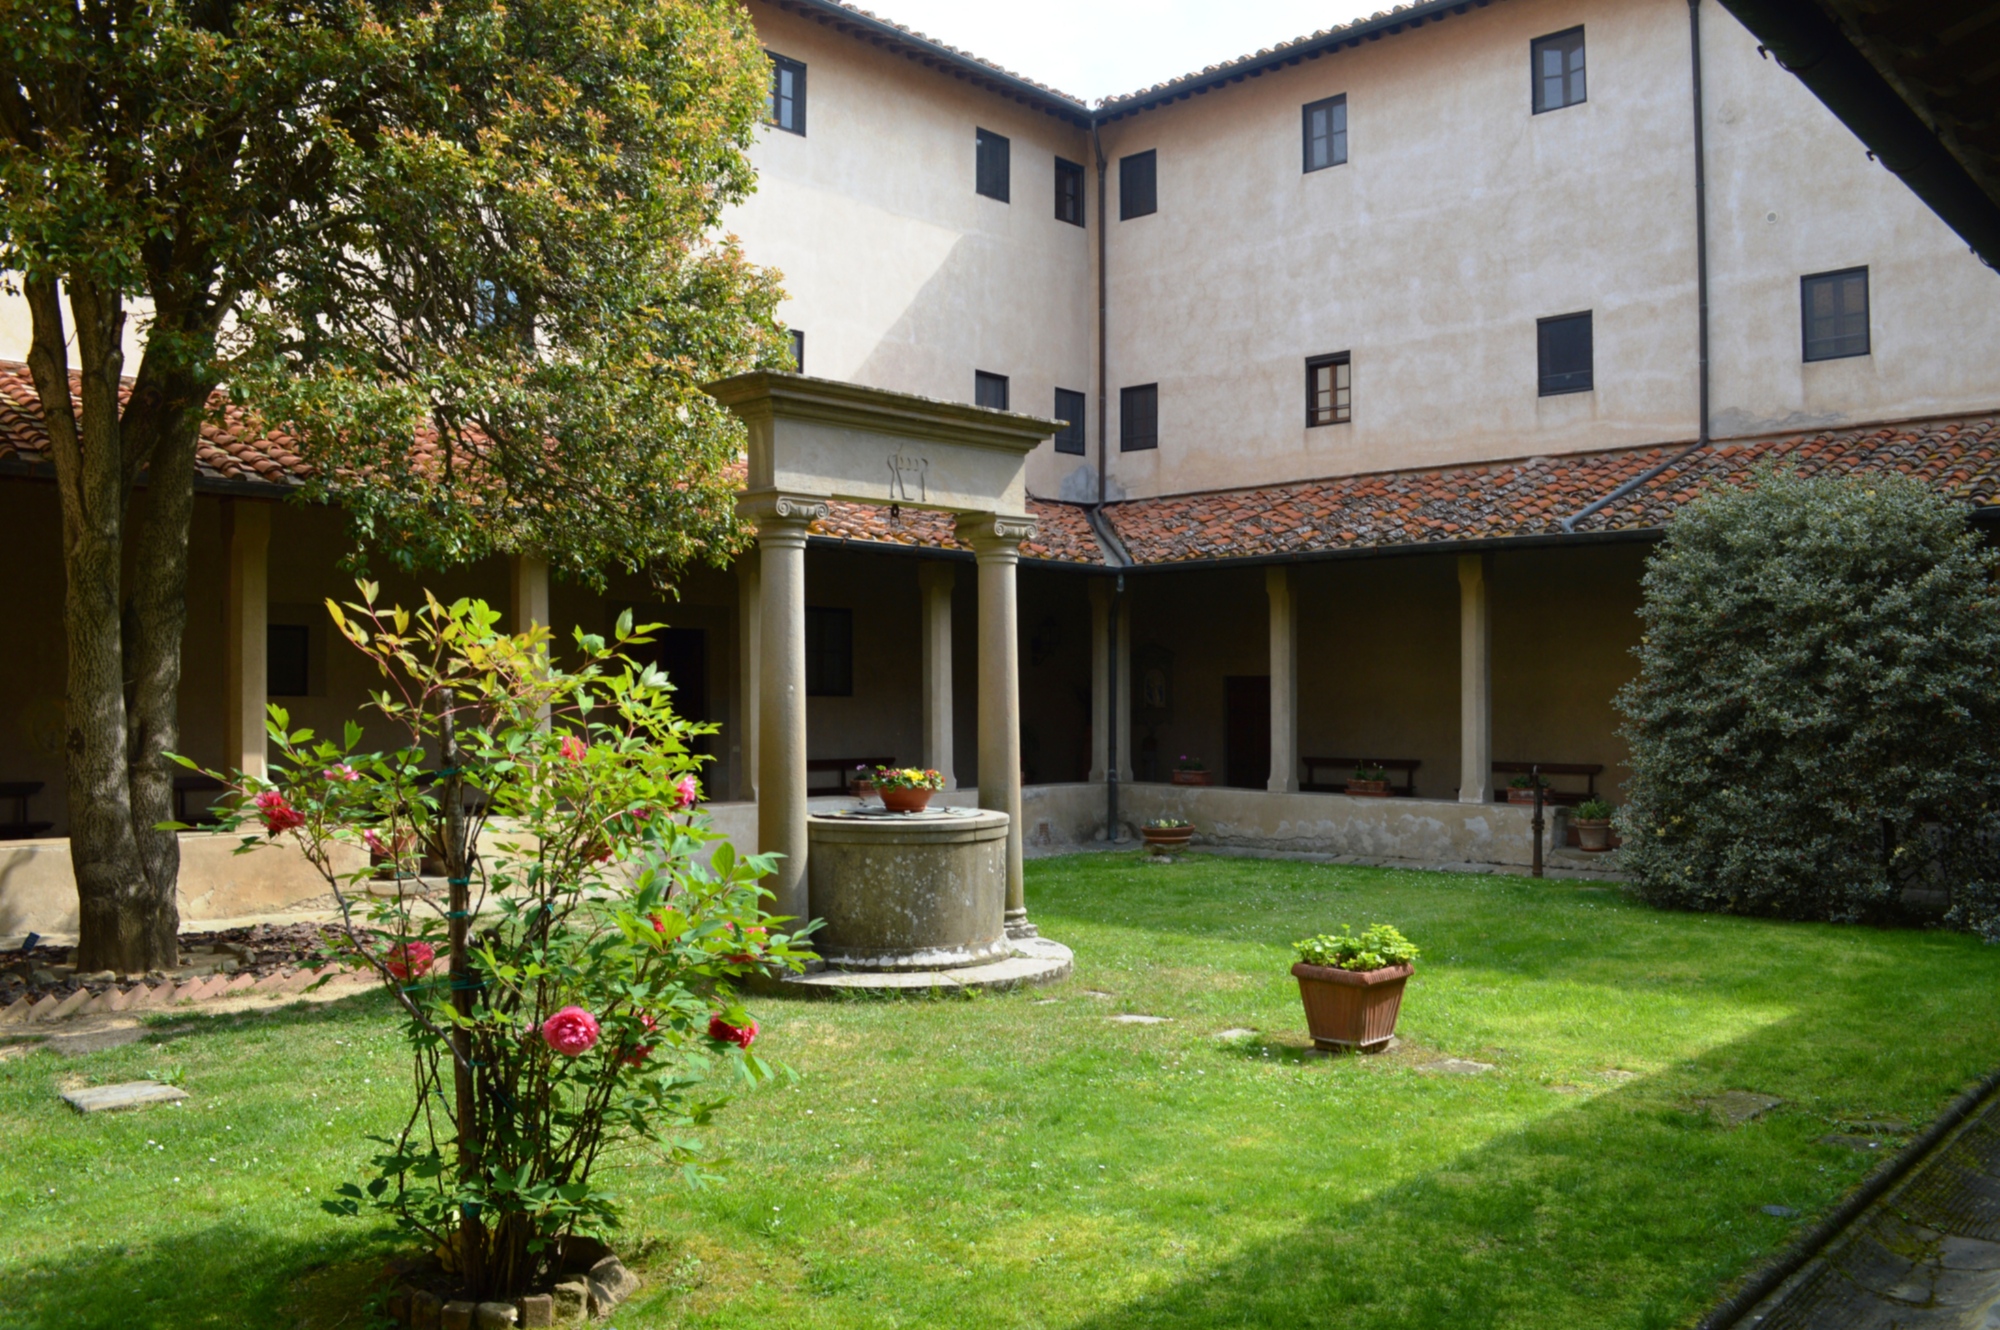 Lecceto Monastery